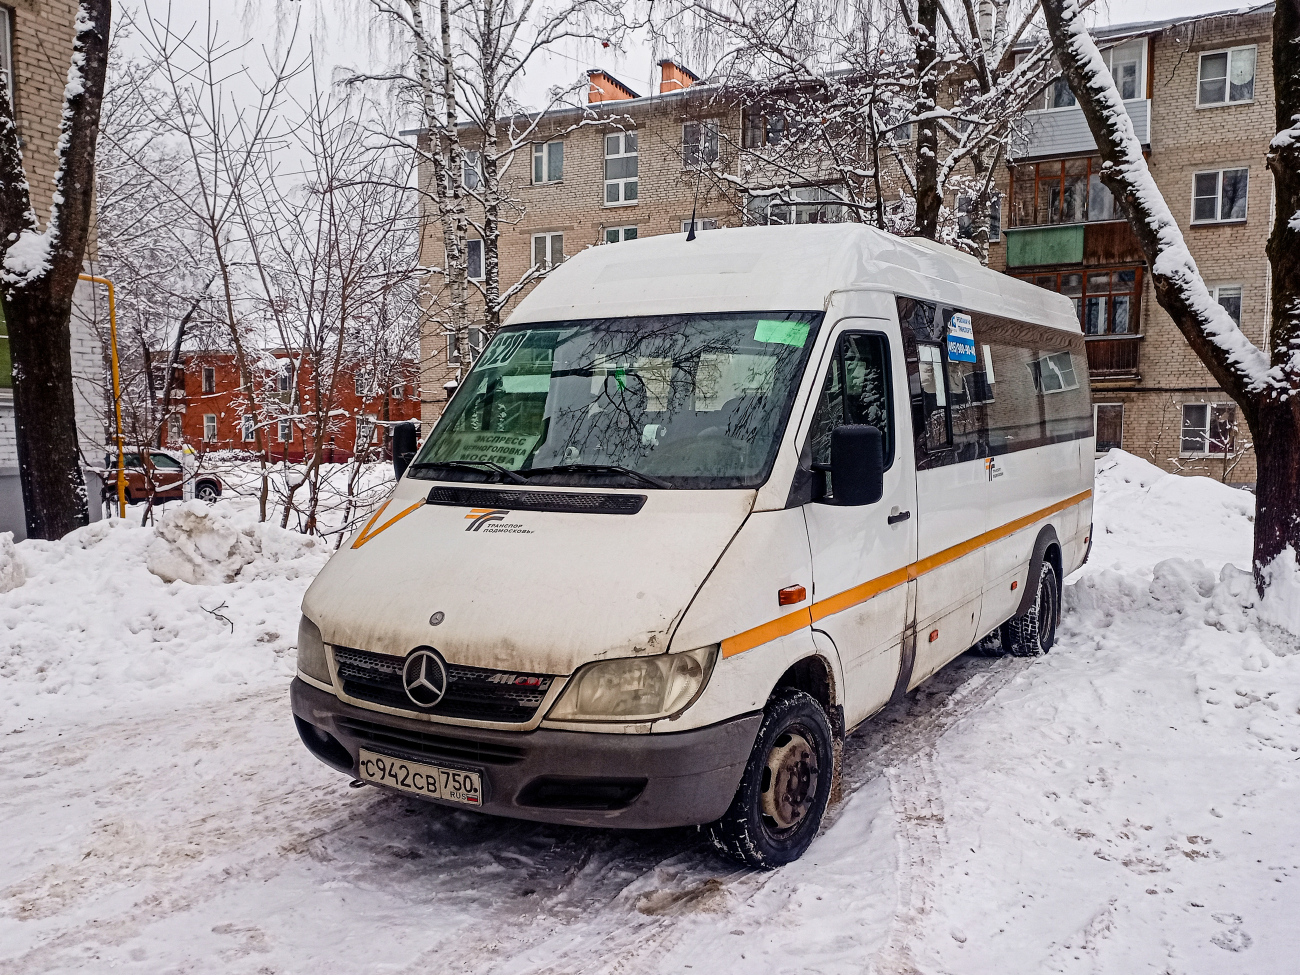 Noginsk, Luidor-223237 (MB Sprinter Classic 411CDI) # С 942 СВ 750